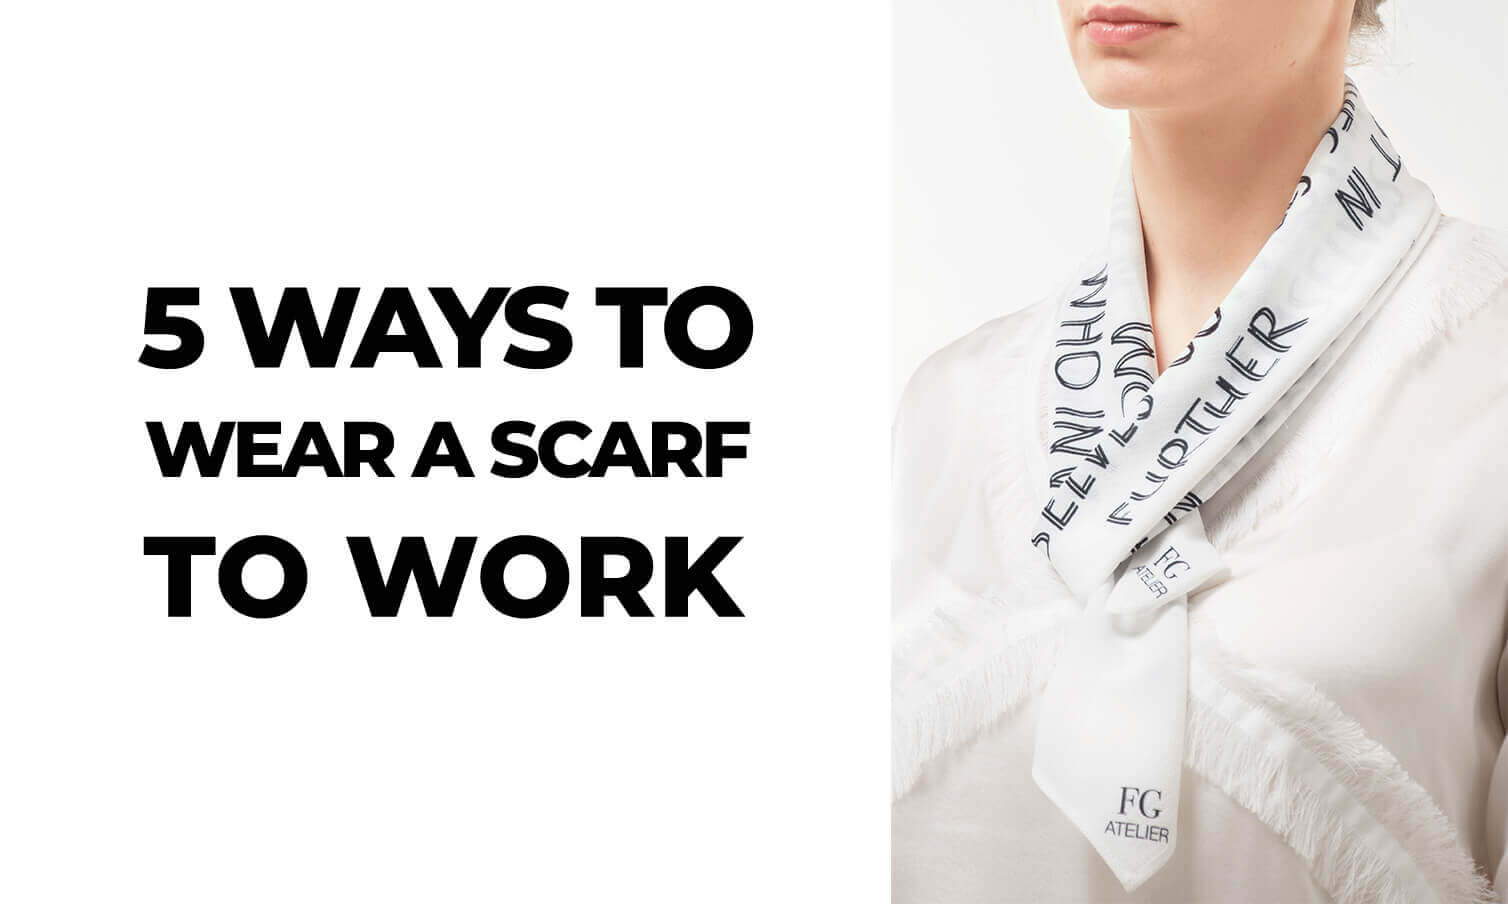 5 ways to wear a scarf to work